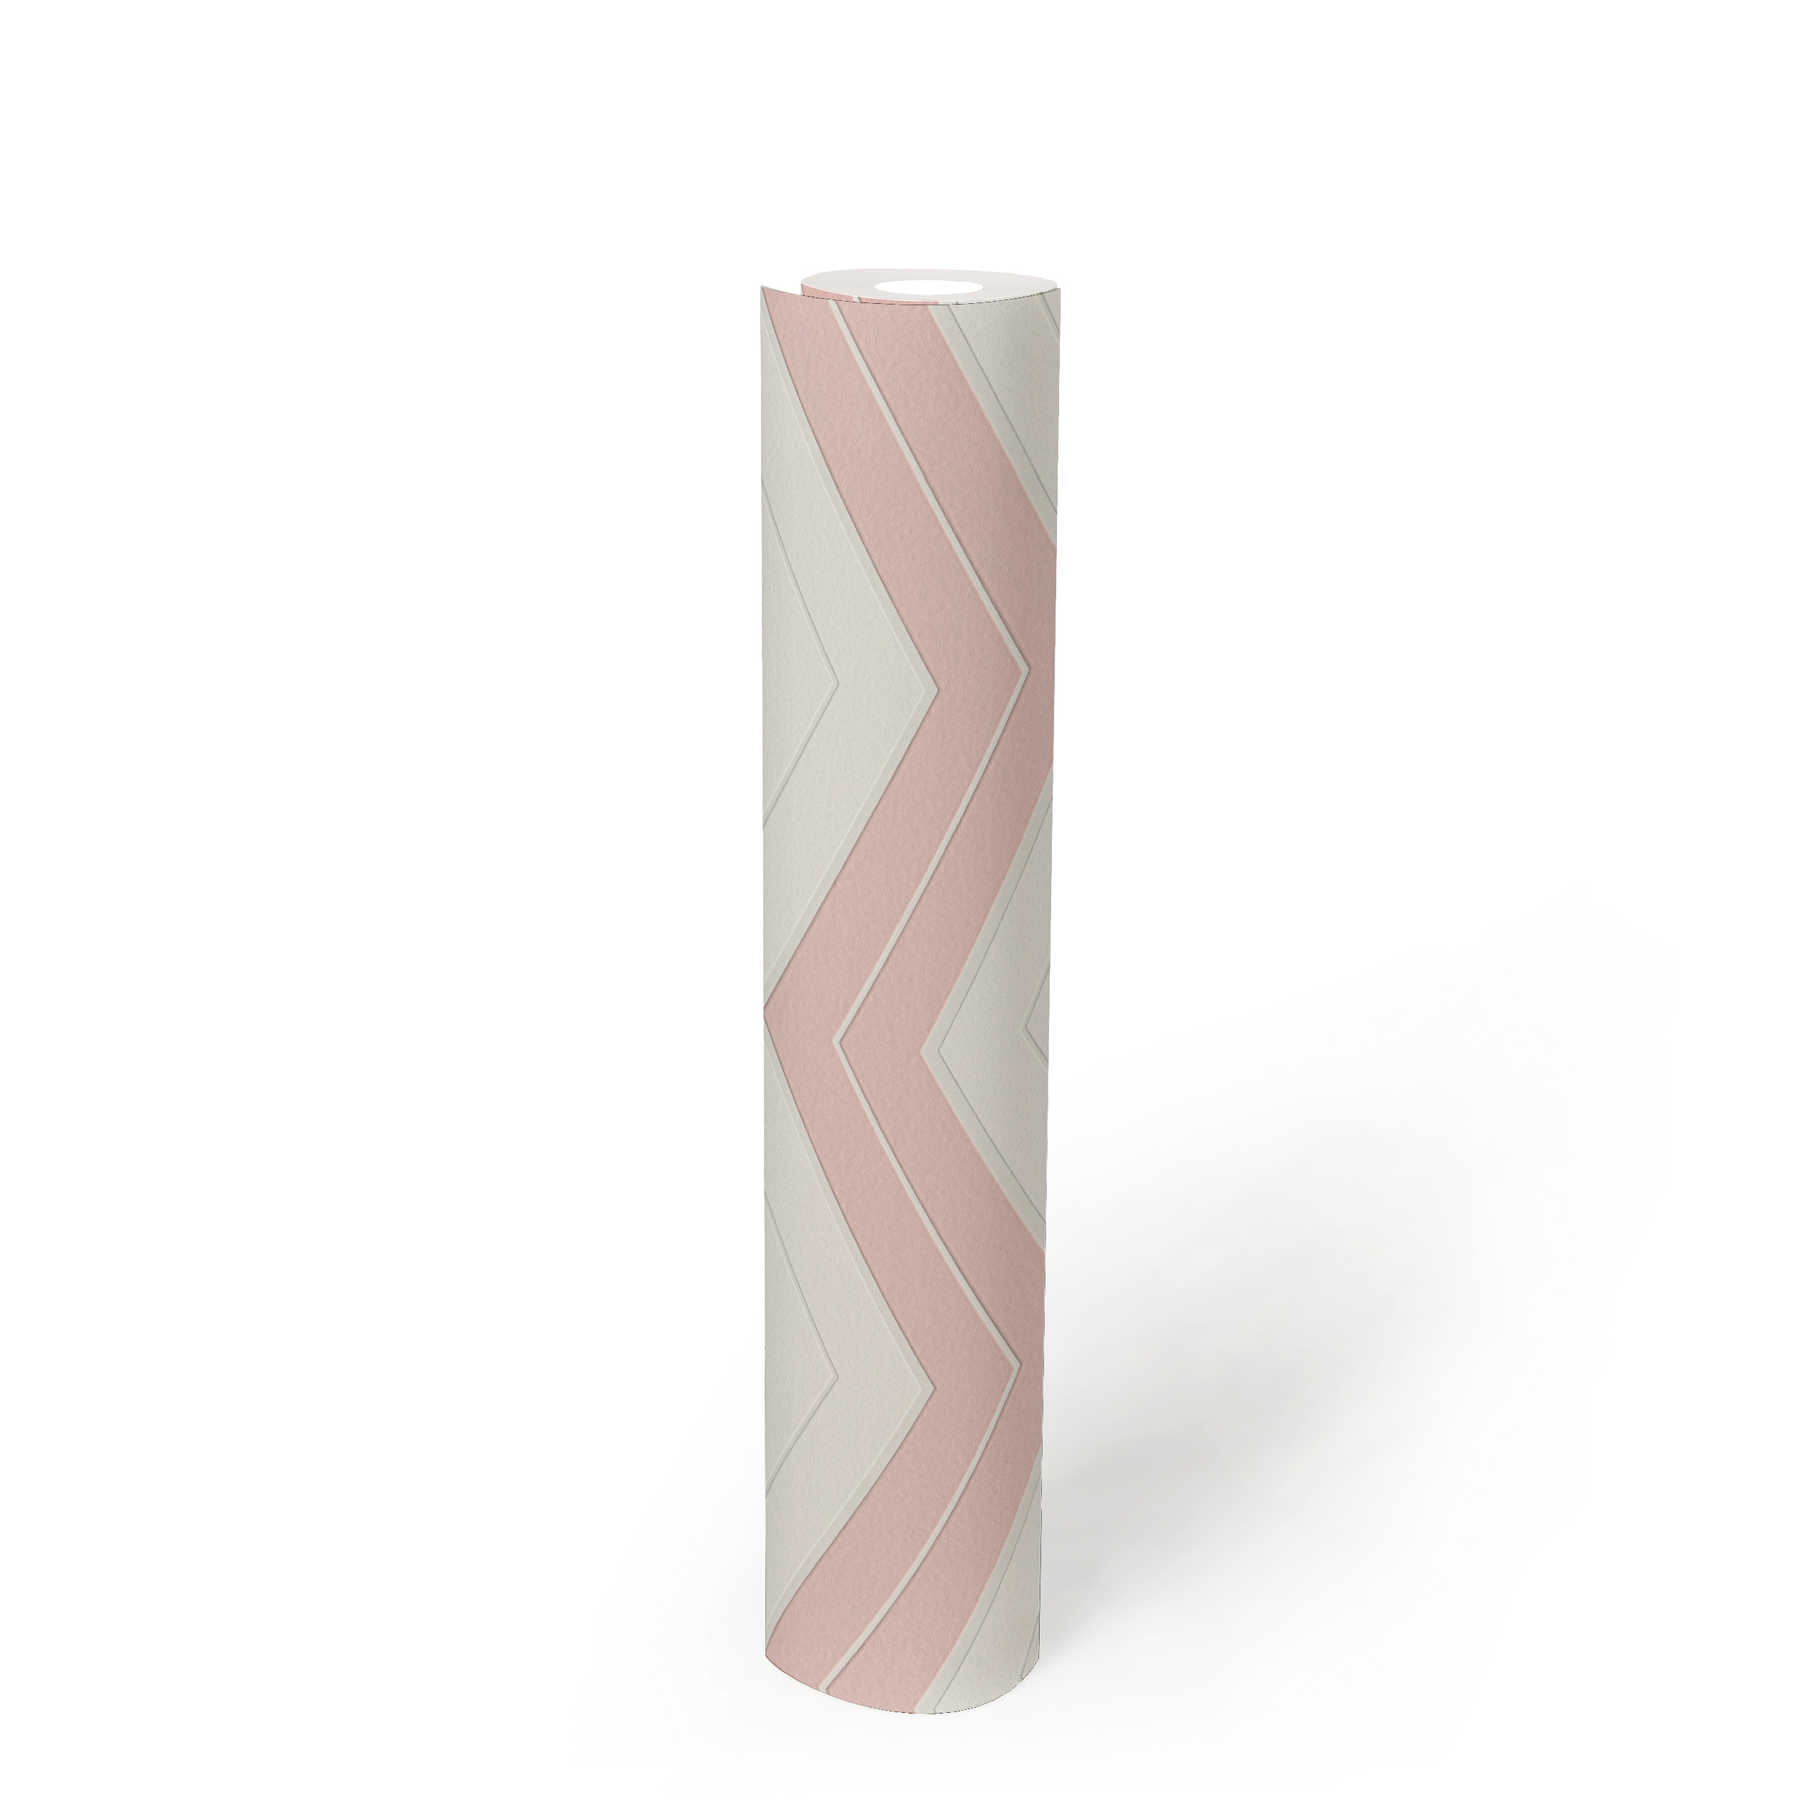             Papier peint à rayures transversales avec lignes en zigzag - rose, blanc
        